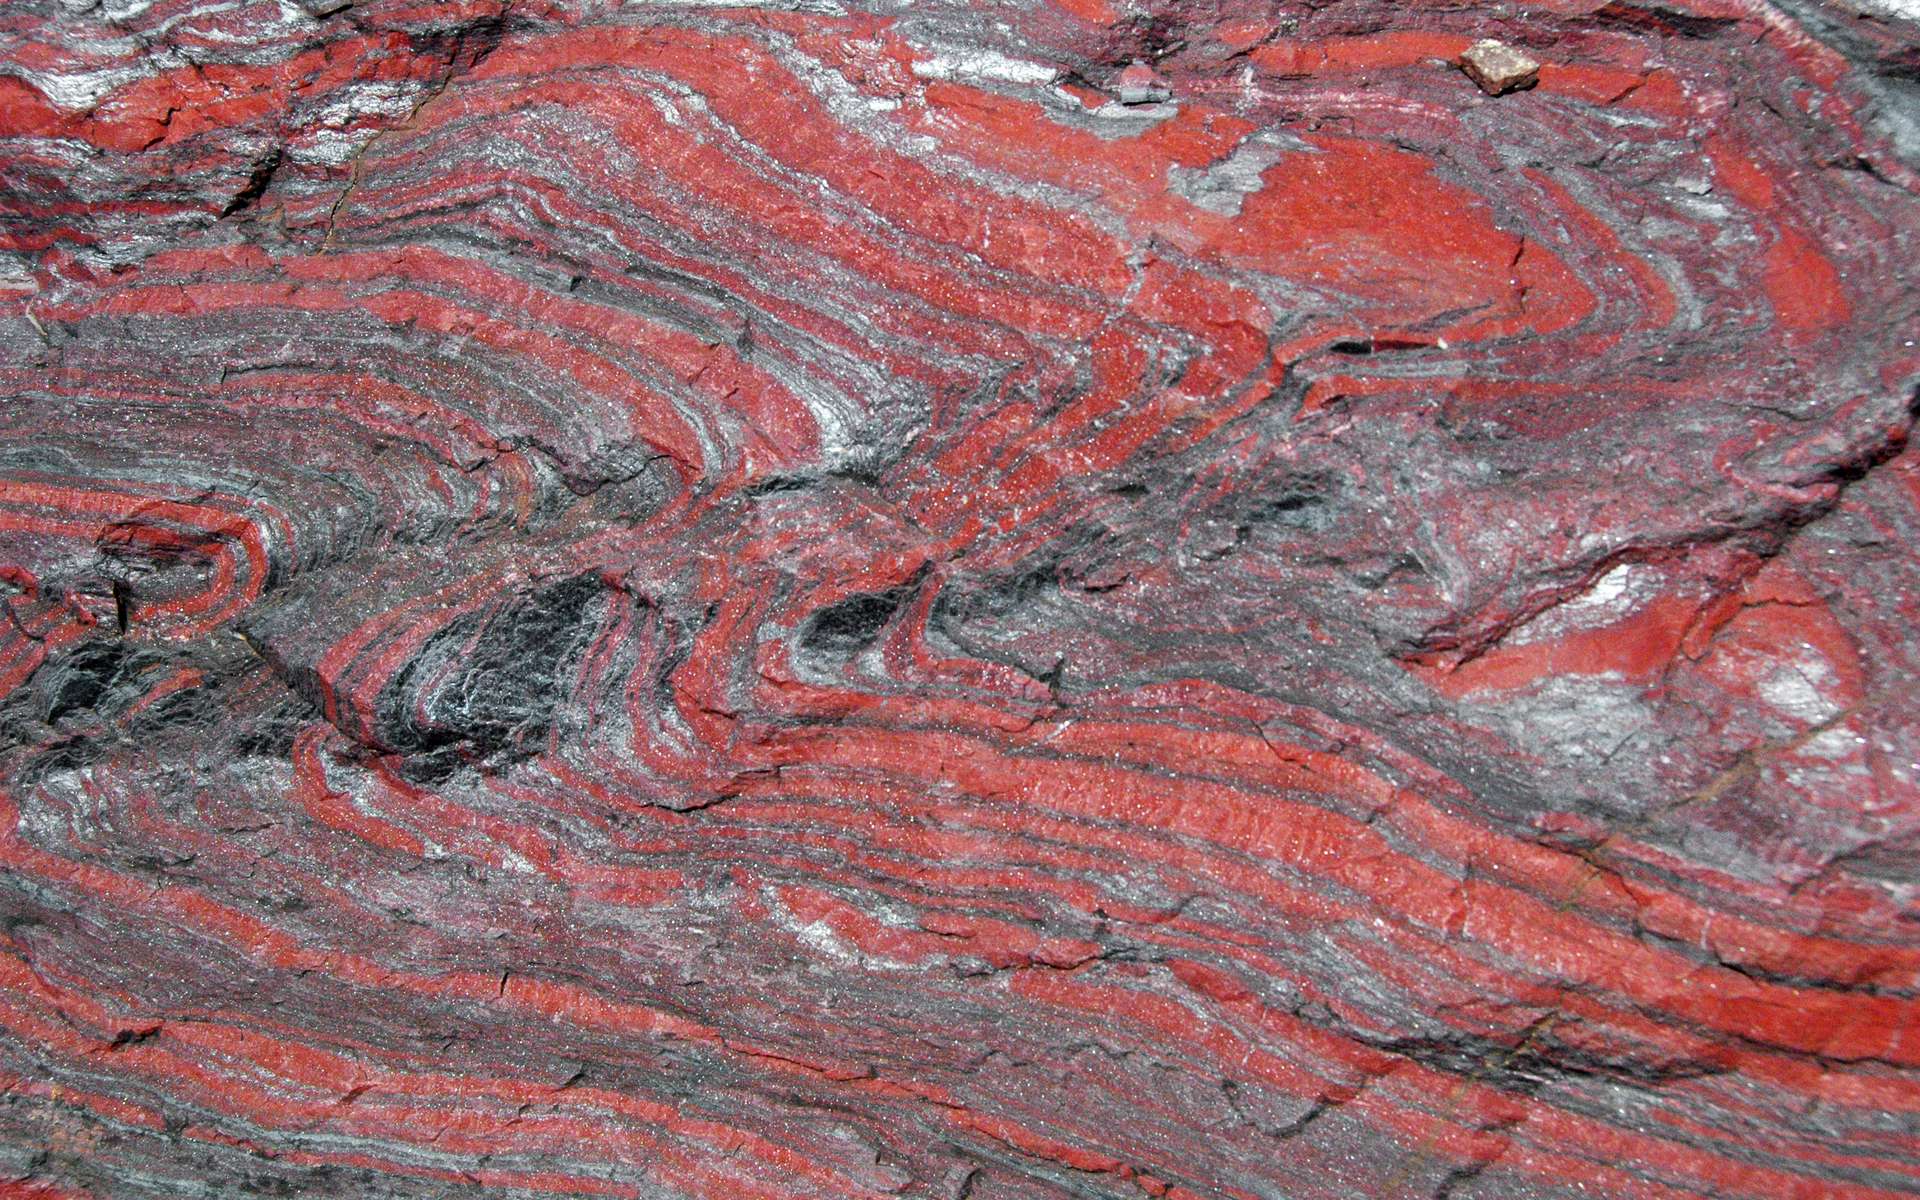 Ces roches ferreuses pourraient être à l'origine des plus grands épisodes volcaniques sur Terre